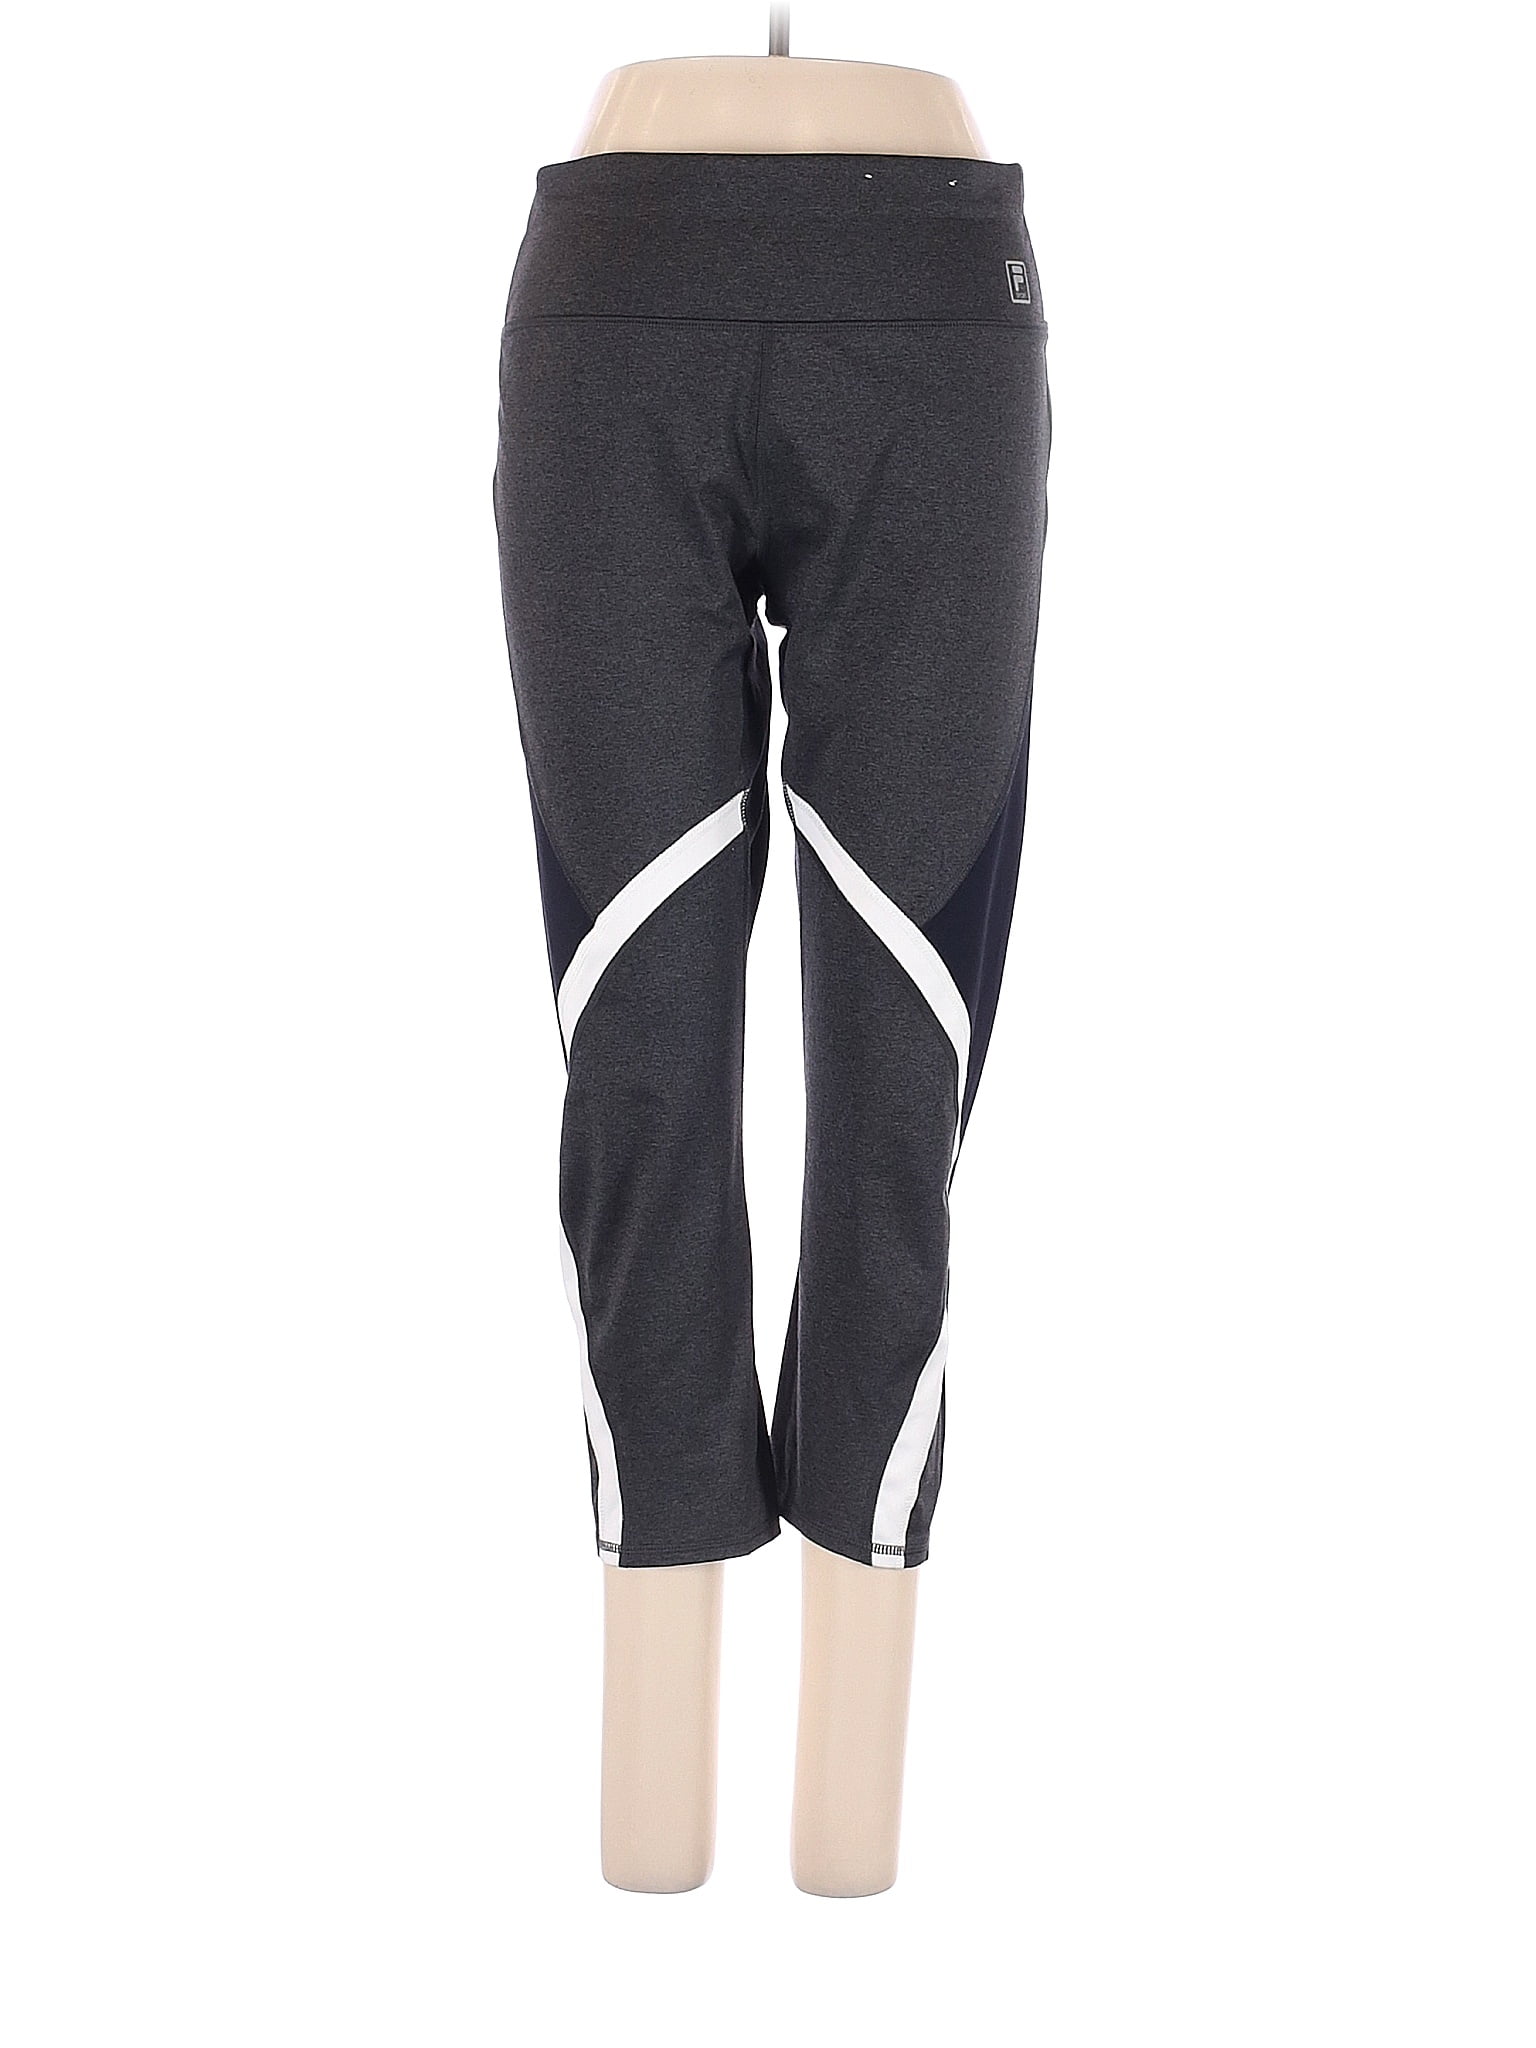 Fila Sport Black Active Pants Size M - 66% off